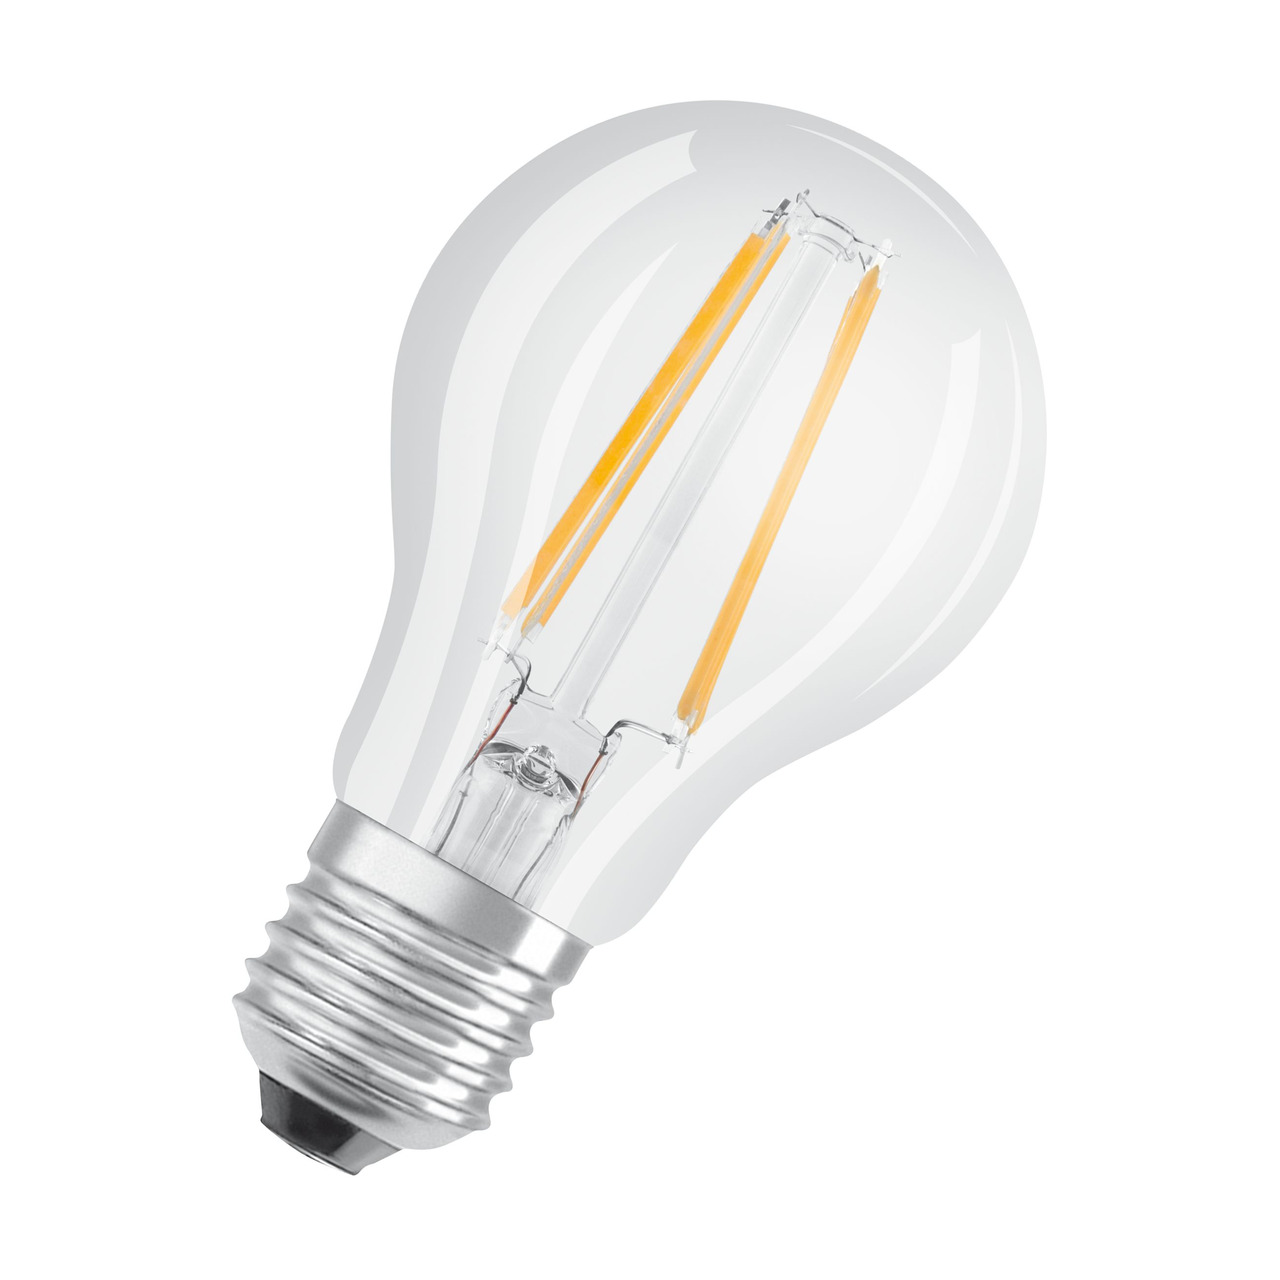 OSRAM 8-5-W-LED-Lampe A60- E27- 806 lm- warmweiss- klar- dimmbar unter Beleuchtung